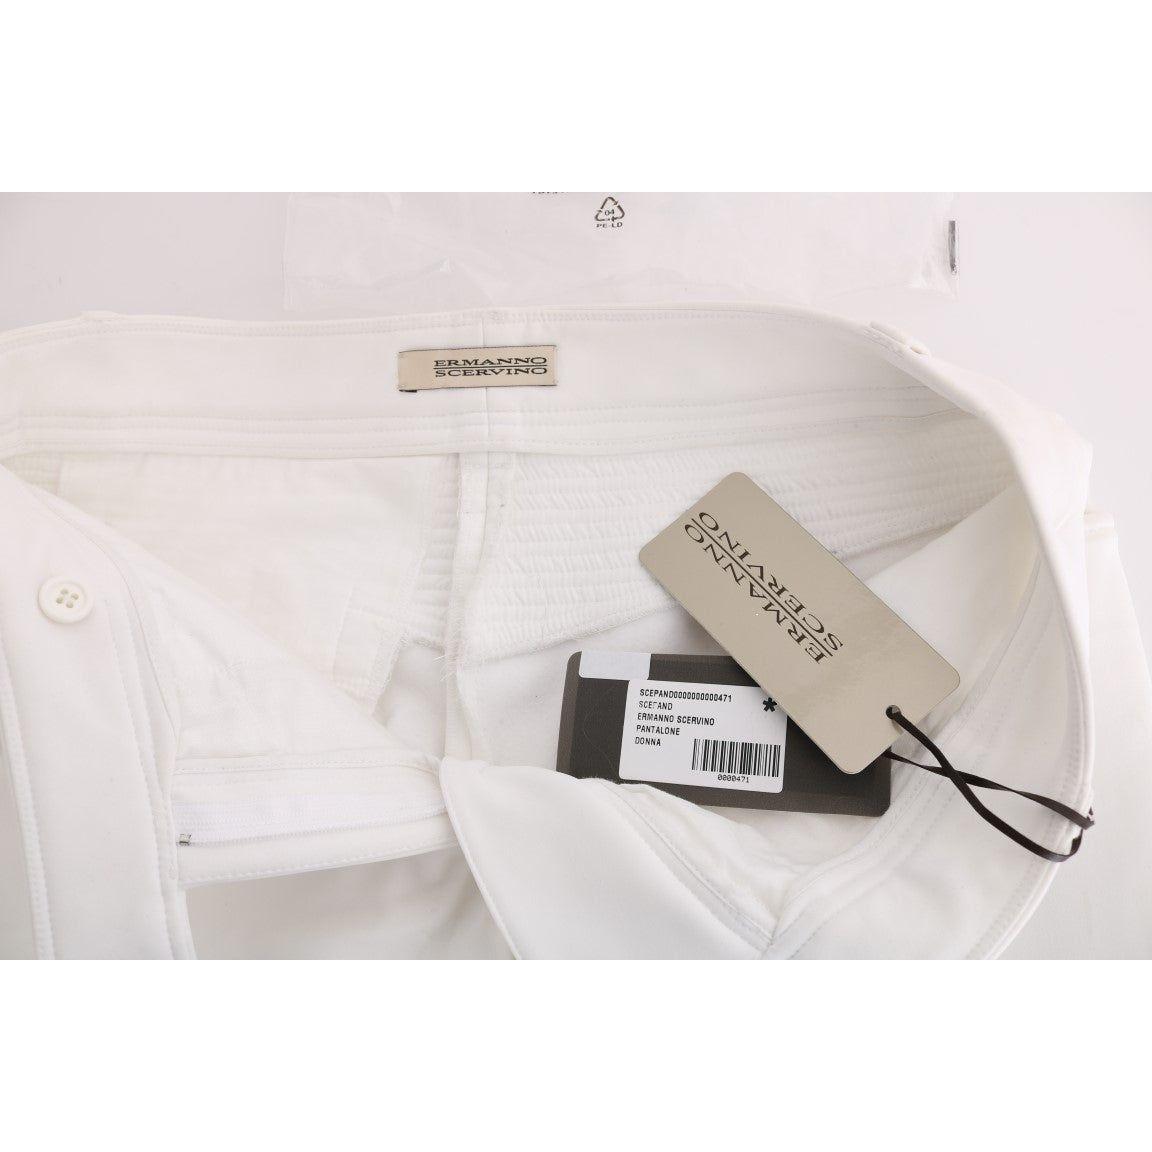 Ermanno Scervino Chic White Slim Fit Cotton Trousers white-cotton-slim-fit-casual-pants-2 449222-white-cotton-slim-fit-casual-pants-3-4.jpg